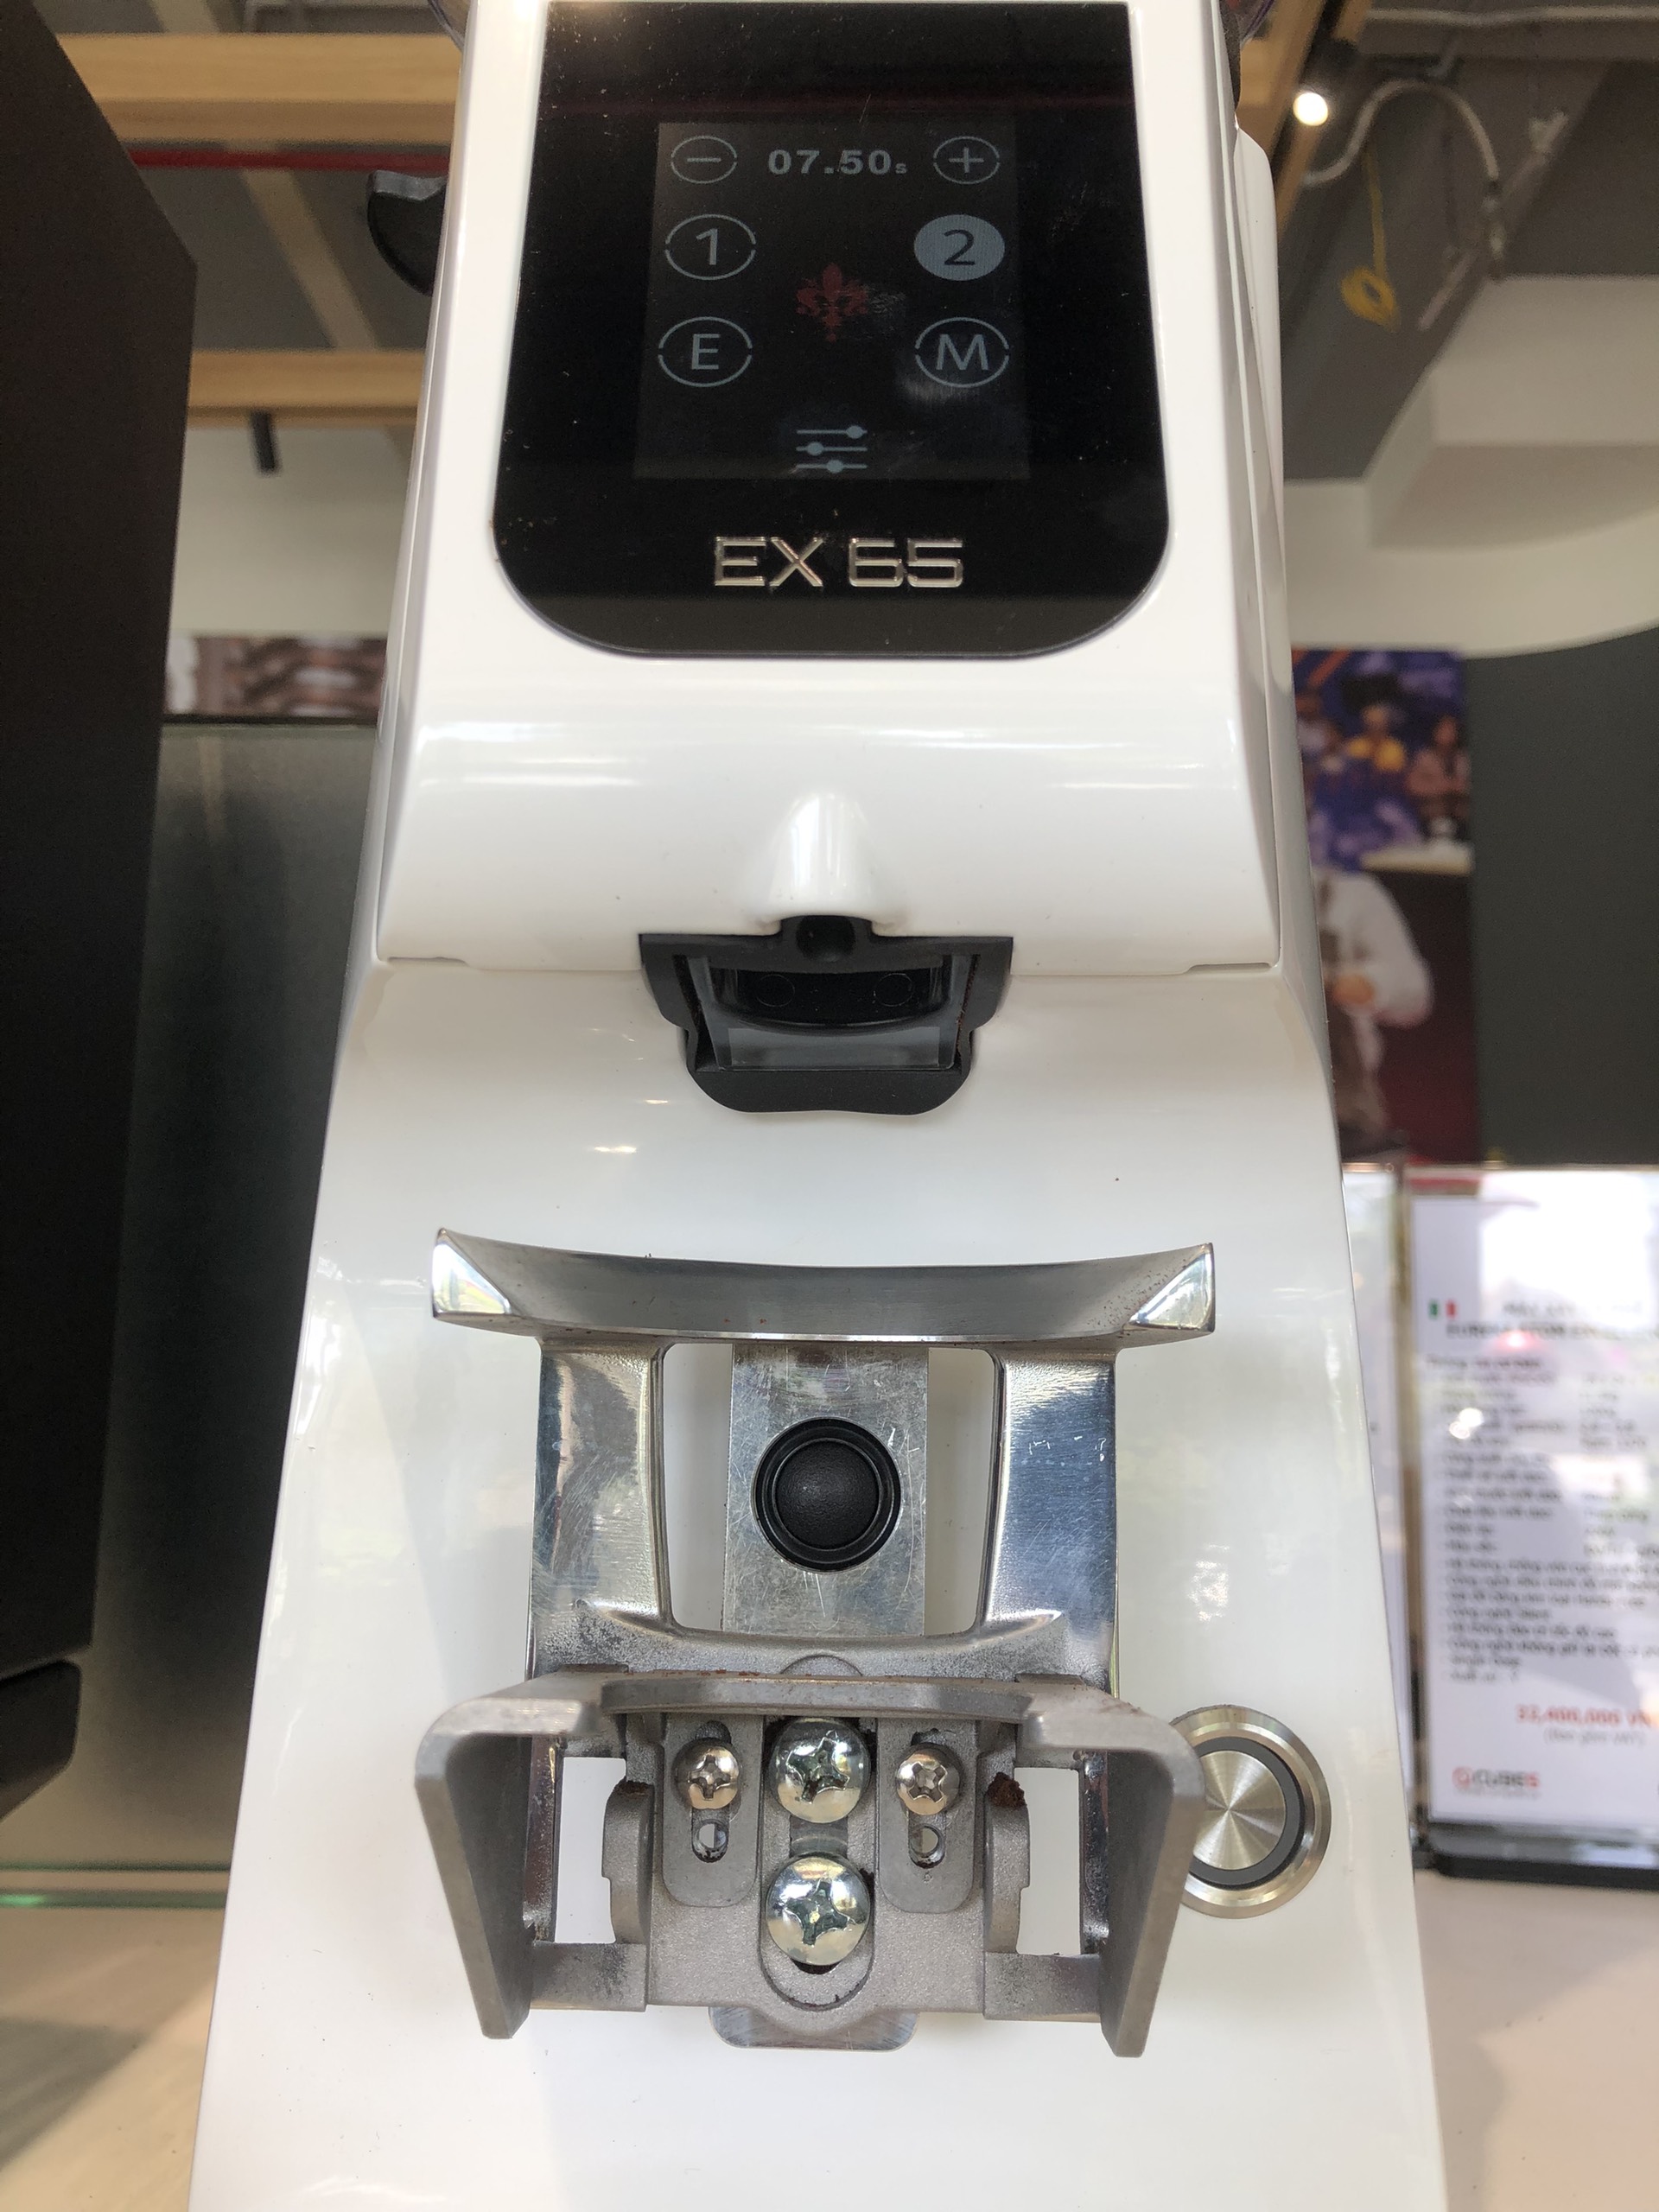 Máy xay cà phê Eureka Atom Excellence 65 - Hàng nhập khẩu từ Ý